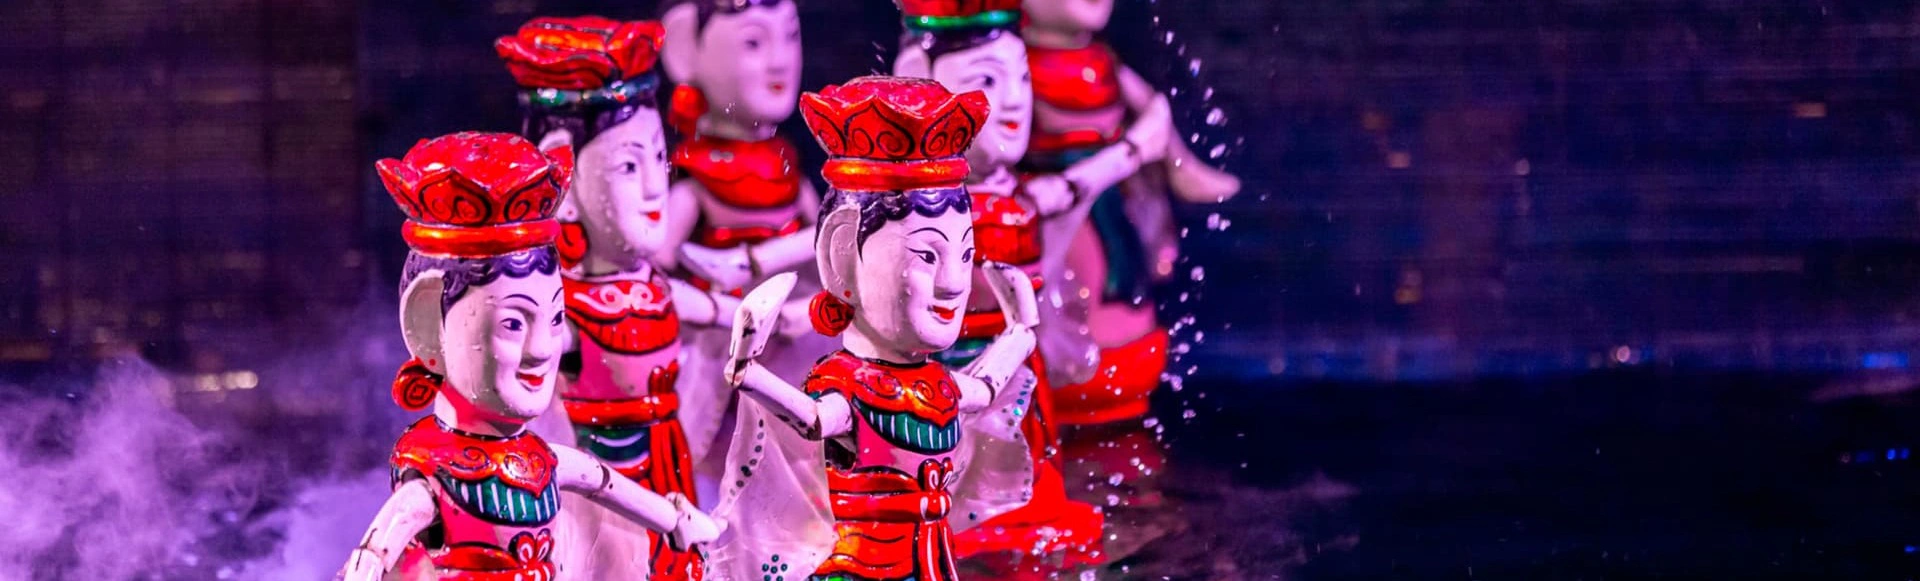 Вьетнамский кукольный театр на воде станет участником Международного театрального фестиваля им. А.П. Чехова